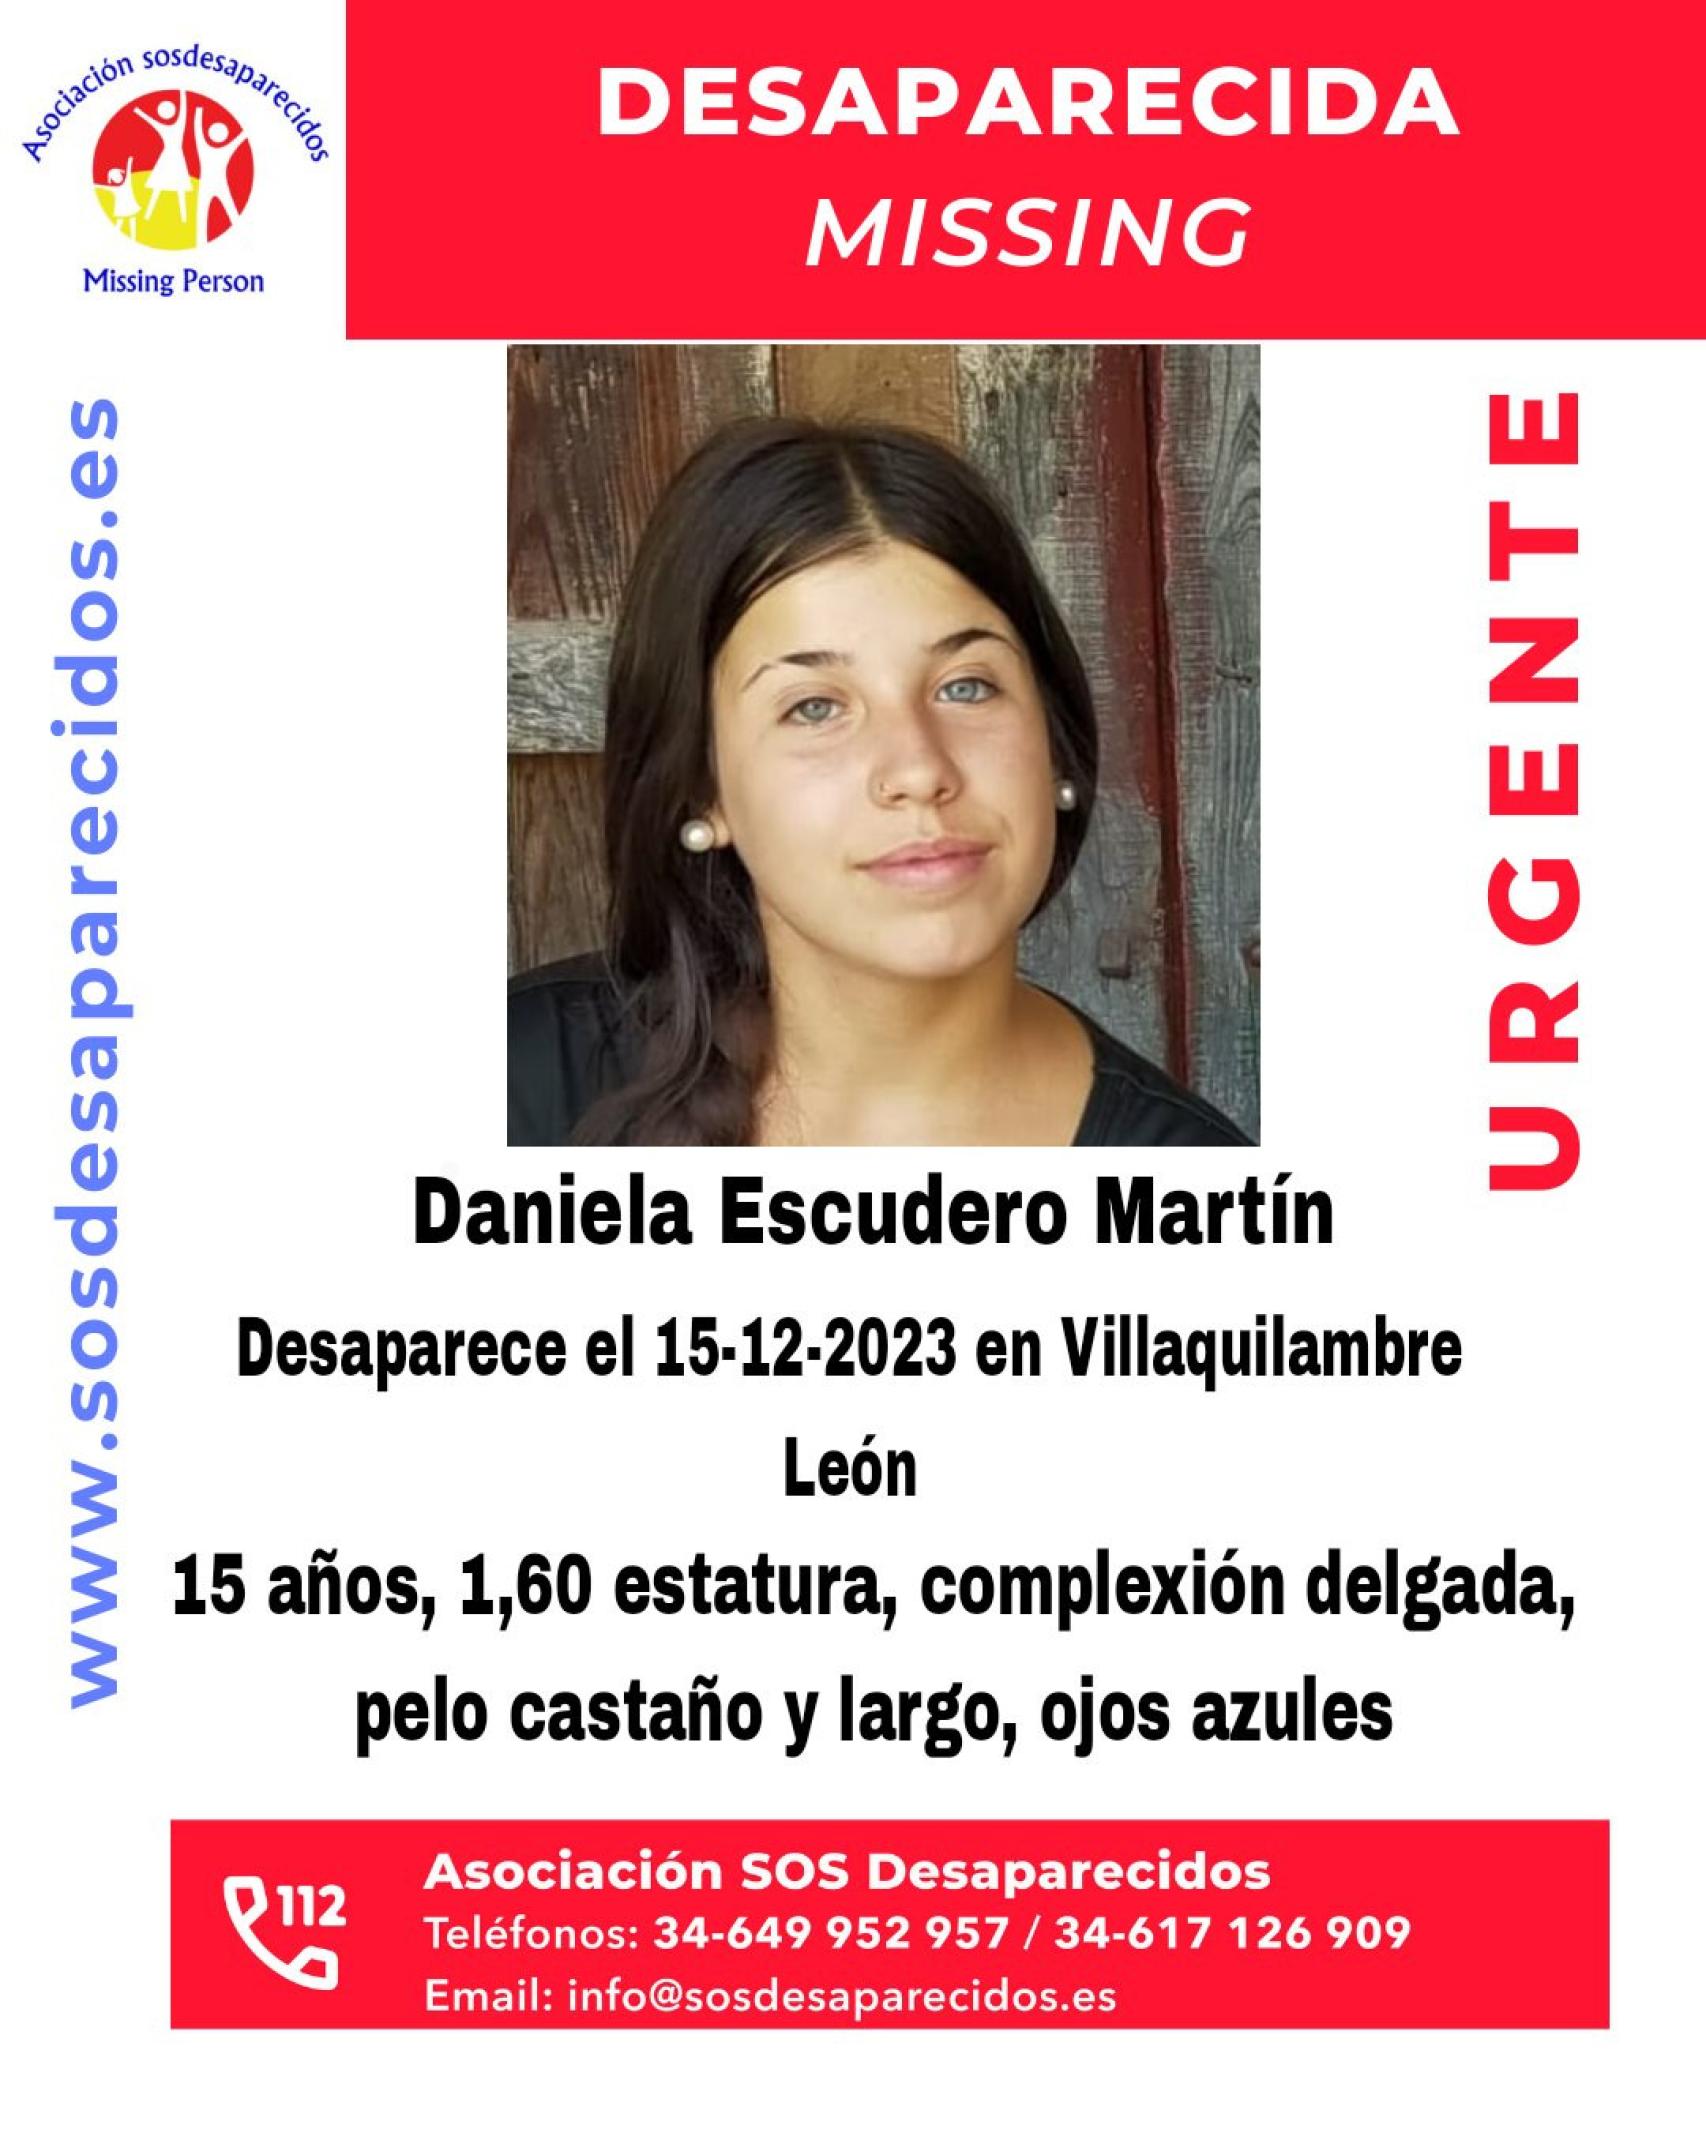 Cartel alertando de la desaparición de Daniela Escudero